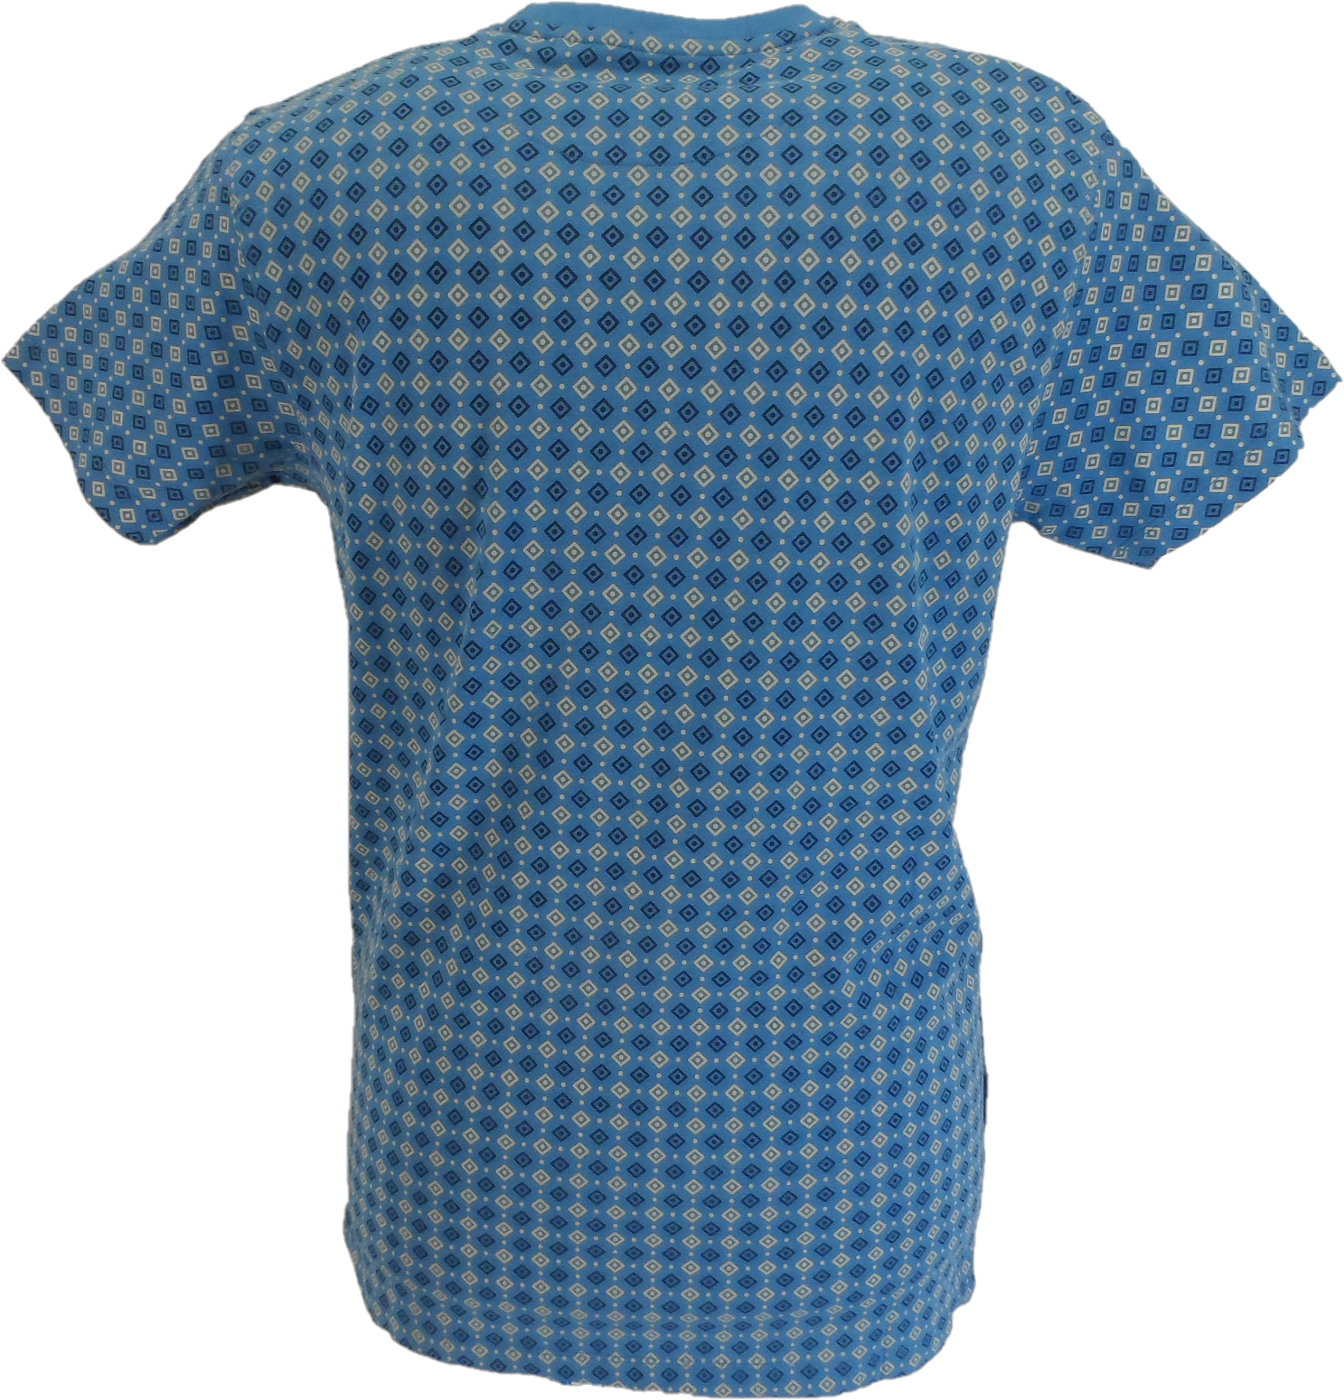 Lambretta camiseta azul vallarta con estampado geométrico para hombre